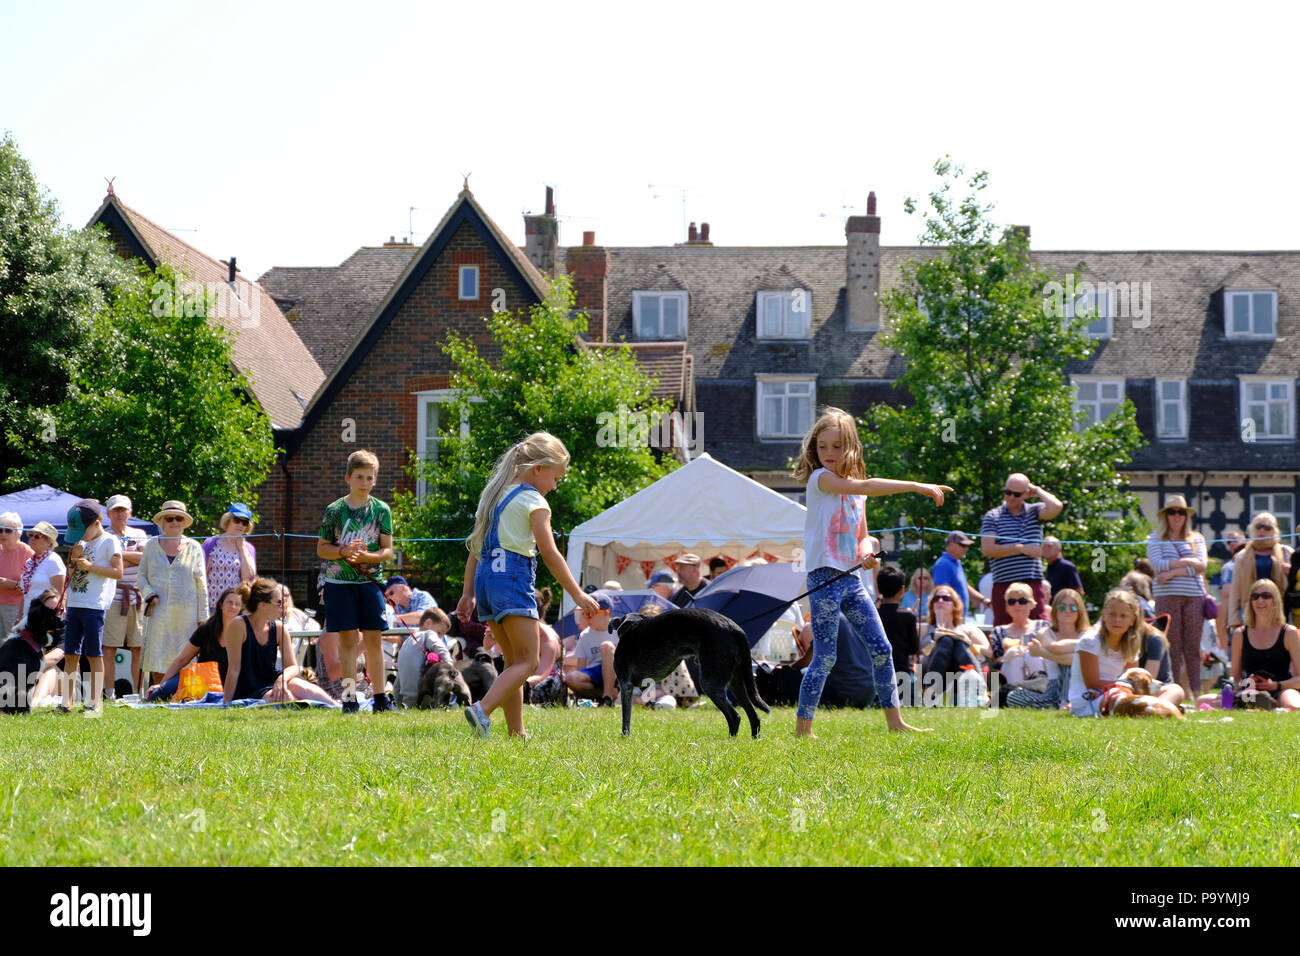 East Preston, West Sussex, UK. Fun dog show tenu le village vert. Les jeunes filles montrant leur animal de chien sur une jambe. Banque D'Images